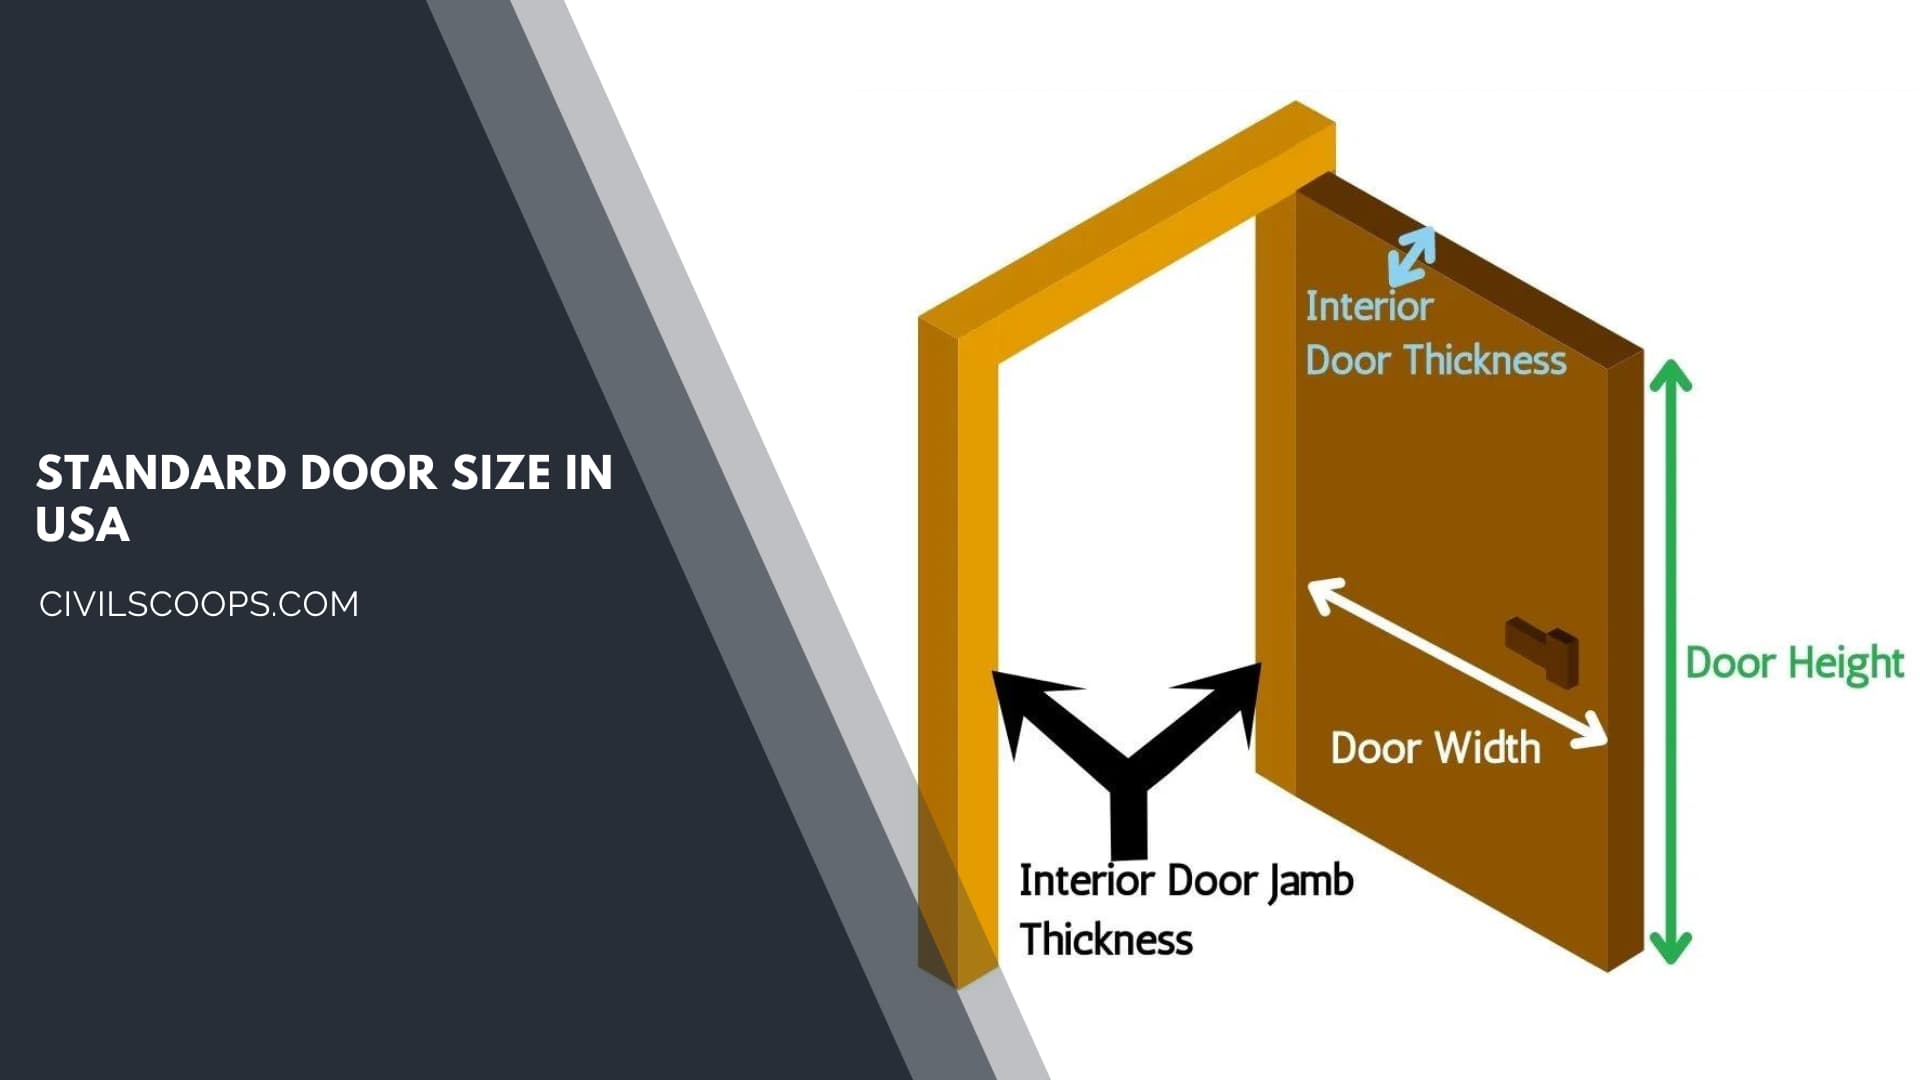 Standard Door Size in USA